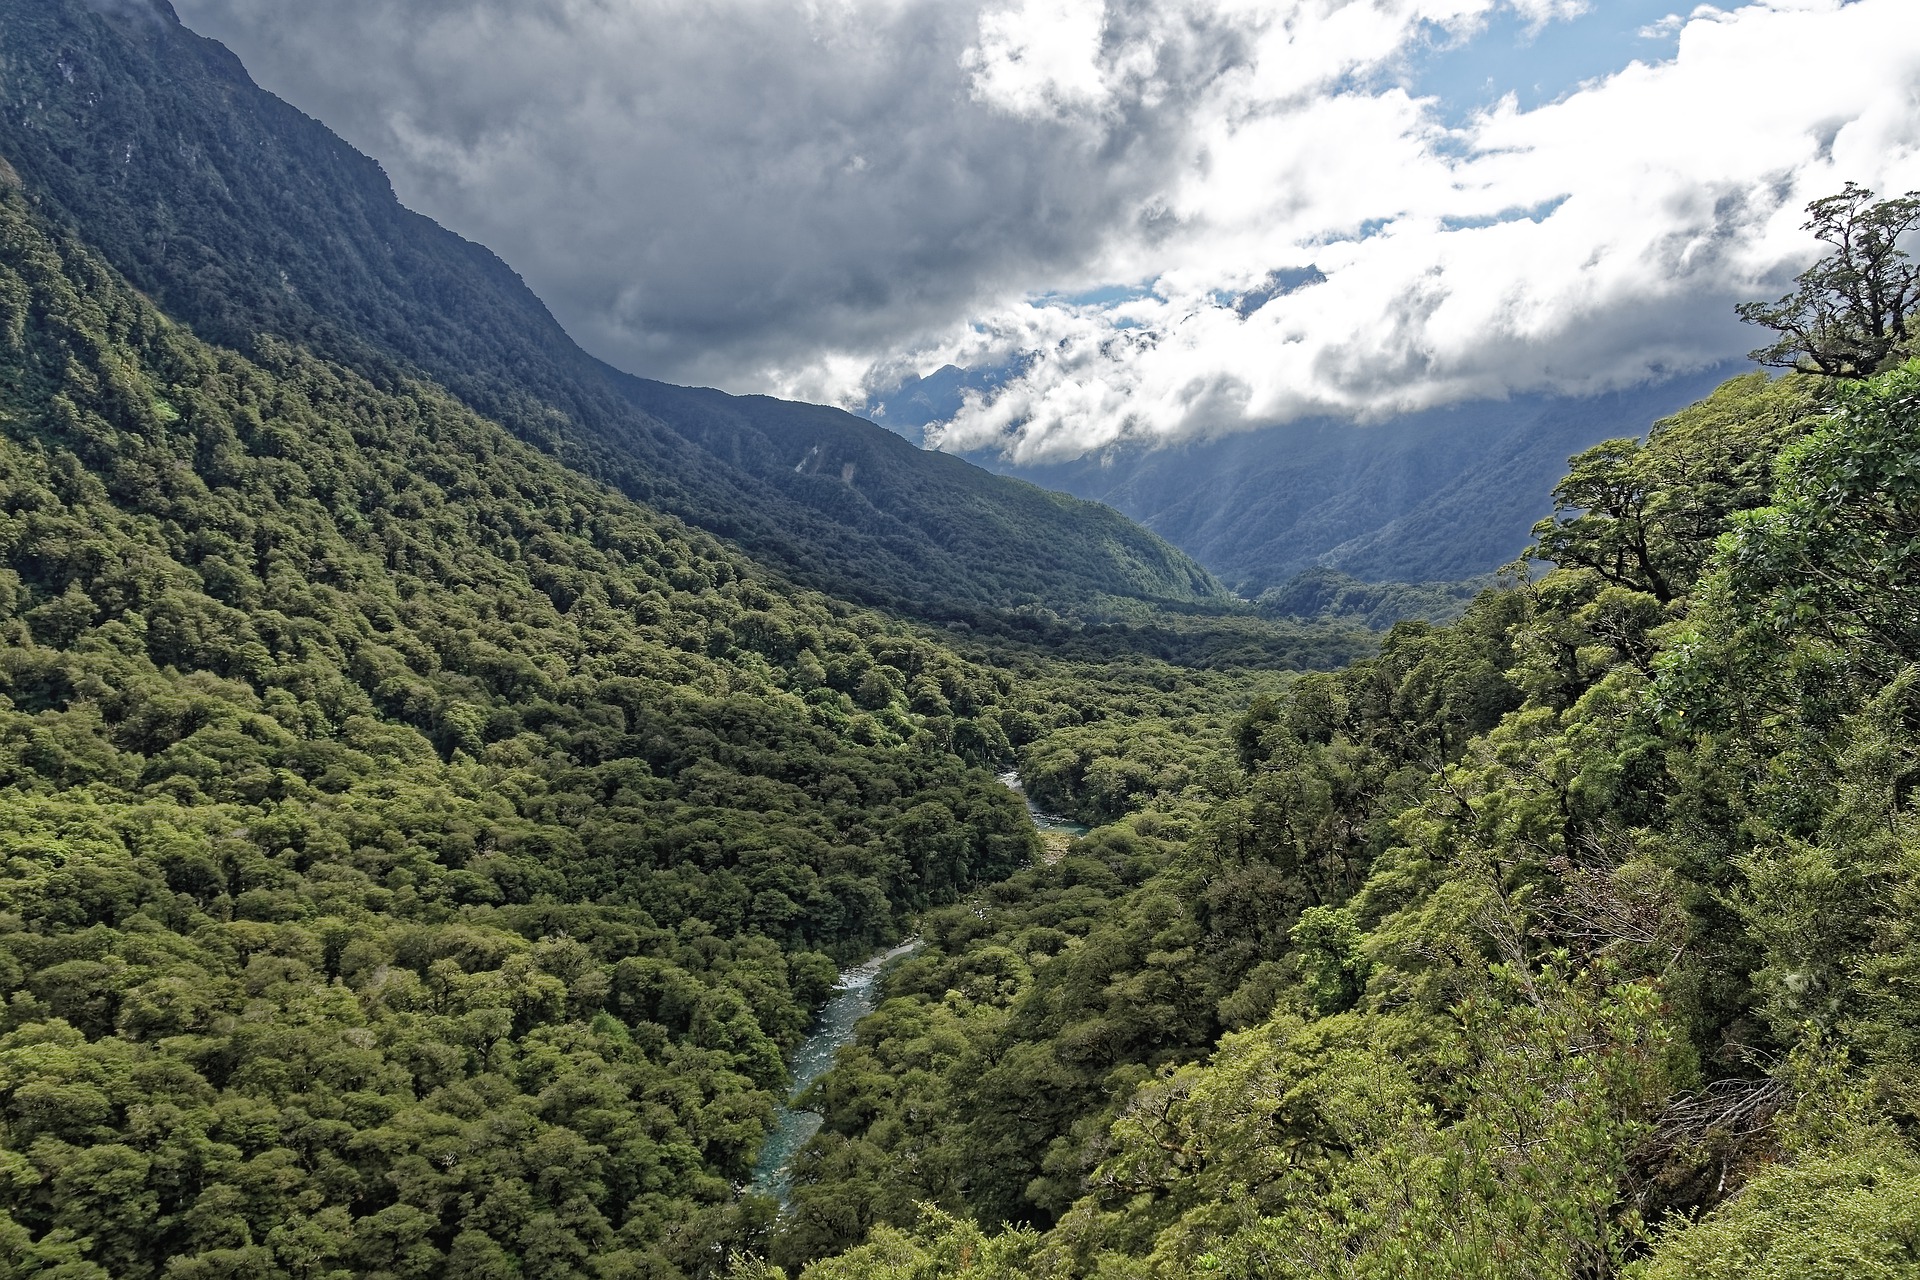 Volontariato internazionale in Nuova Zelanda per vivere un’avventura nella foresta